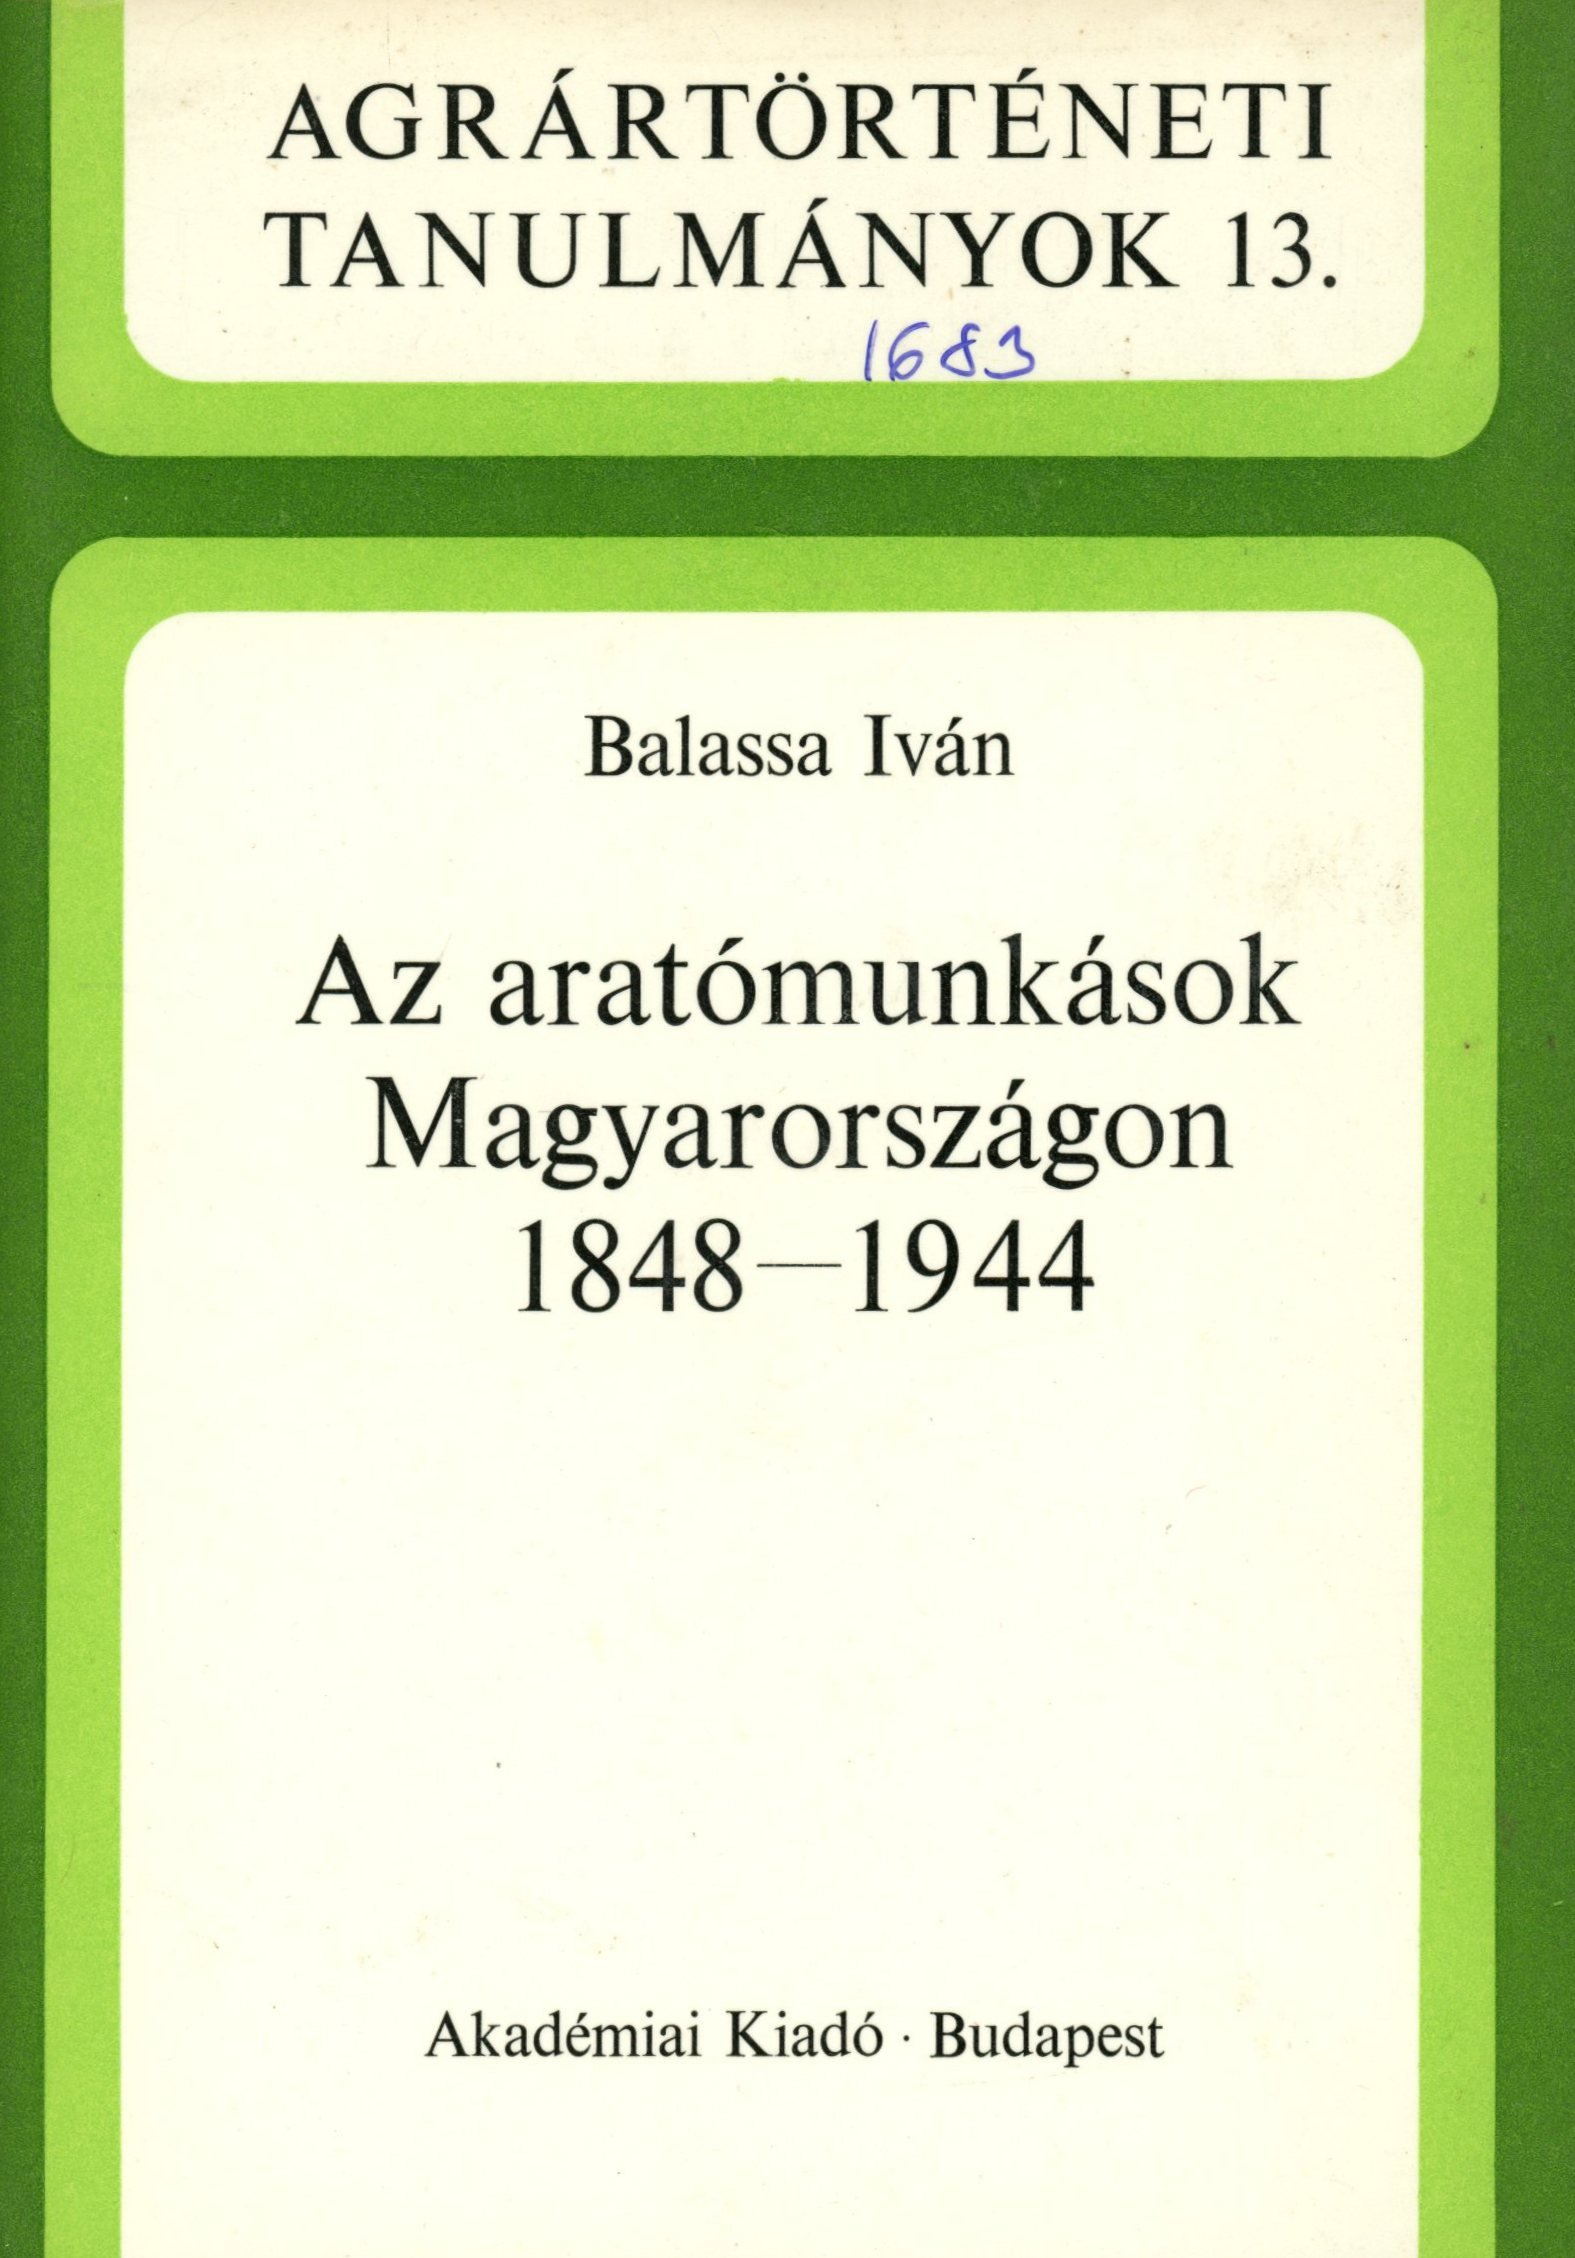 Balassa Iván (Erkel Ferenc Múzeum és Könyvtár, Gyula CC BY-NC-SA)